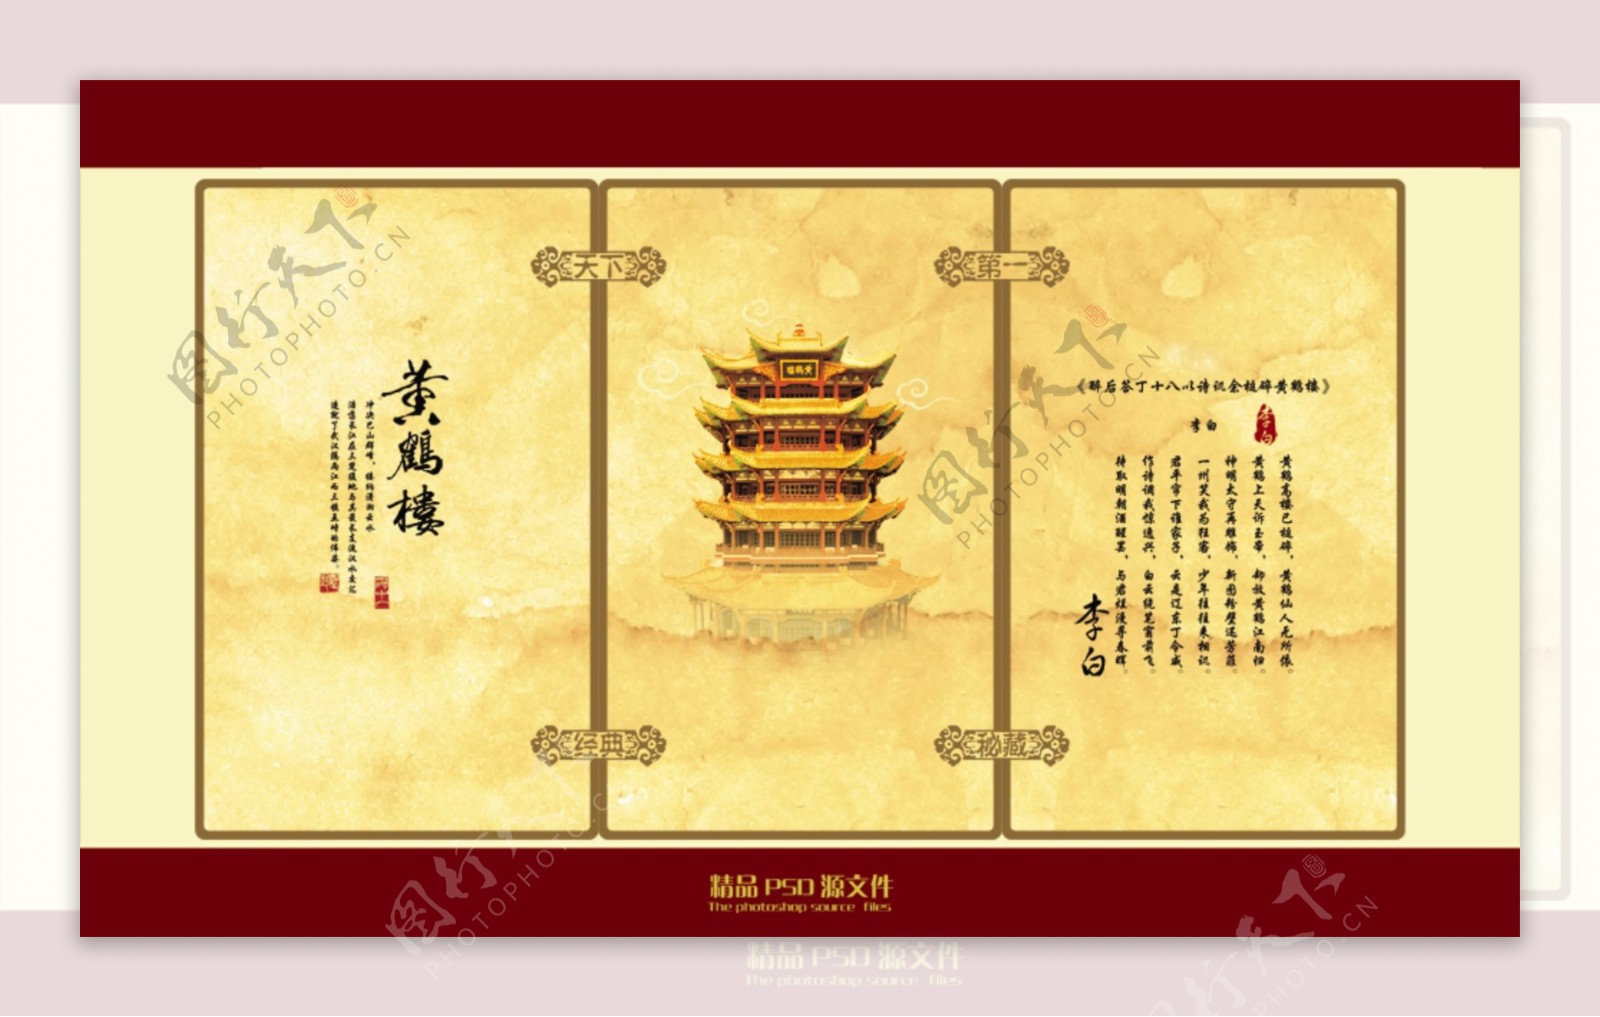 中国元素风格排版设计psd素材04